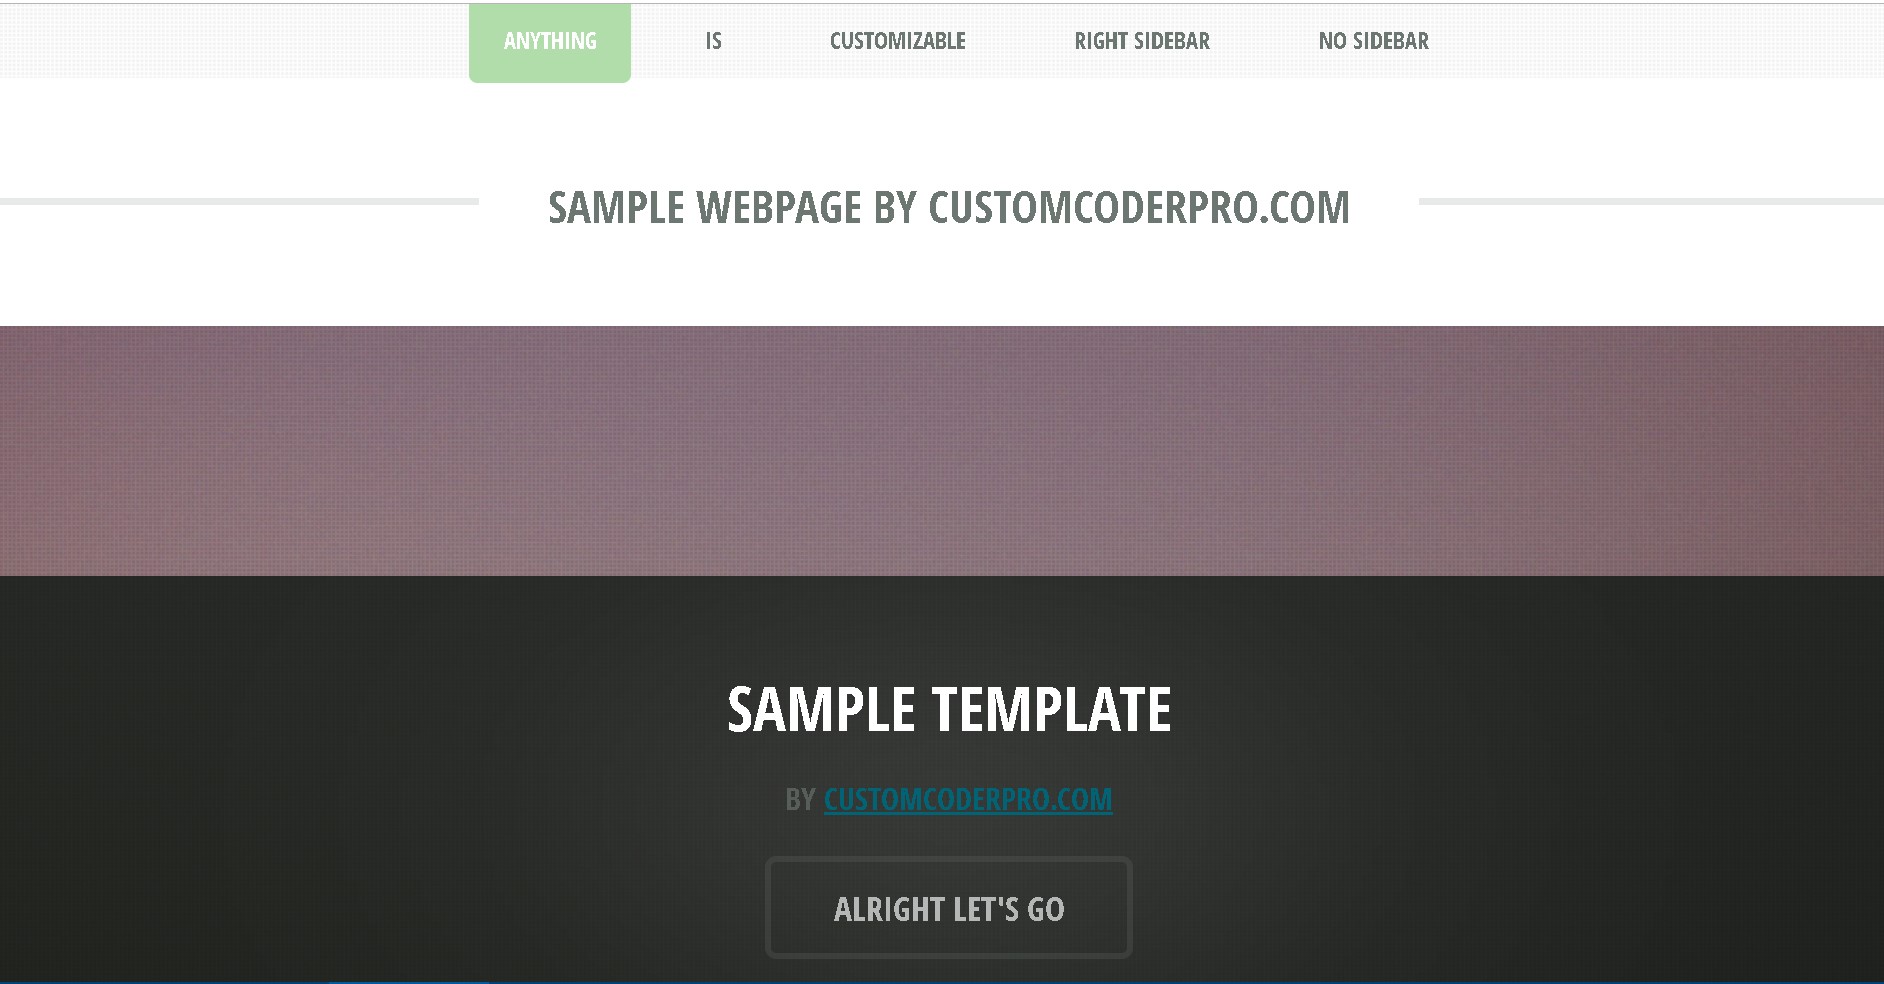 CustomCoderPro Webstie Sample